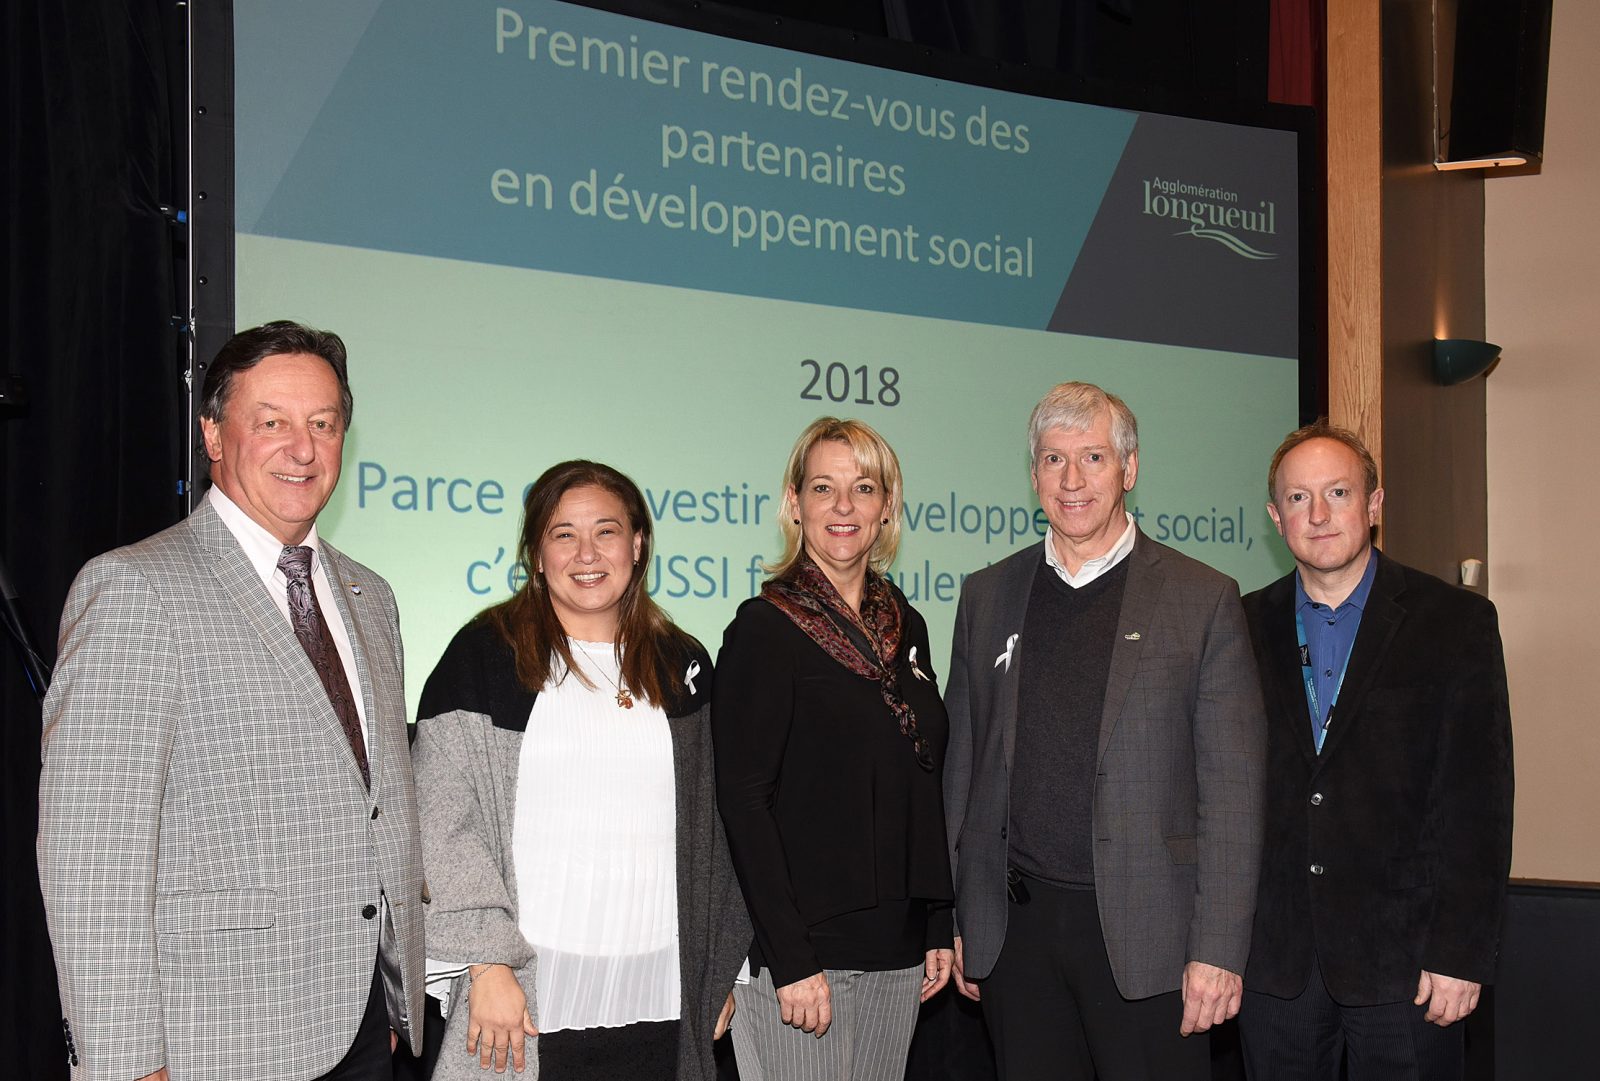 Le premier rendez-vous des partenaires en développement social de l’agglomération de Longueuil : un succès garant de l’avenir!